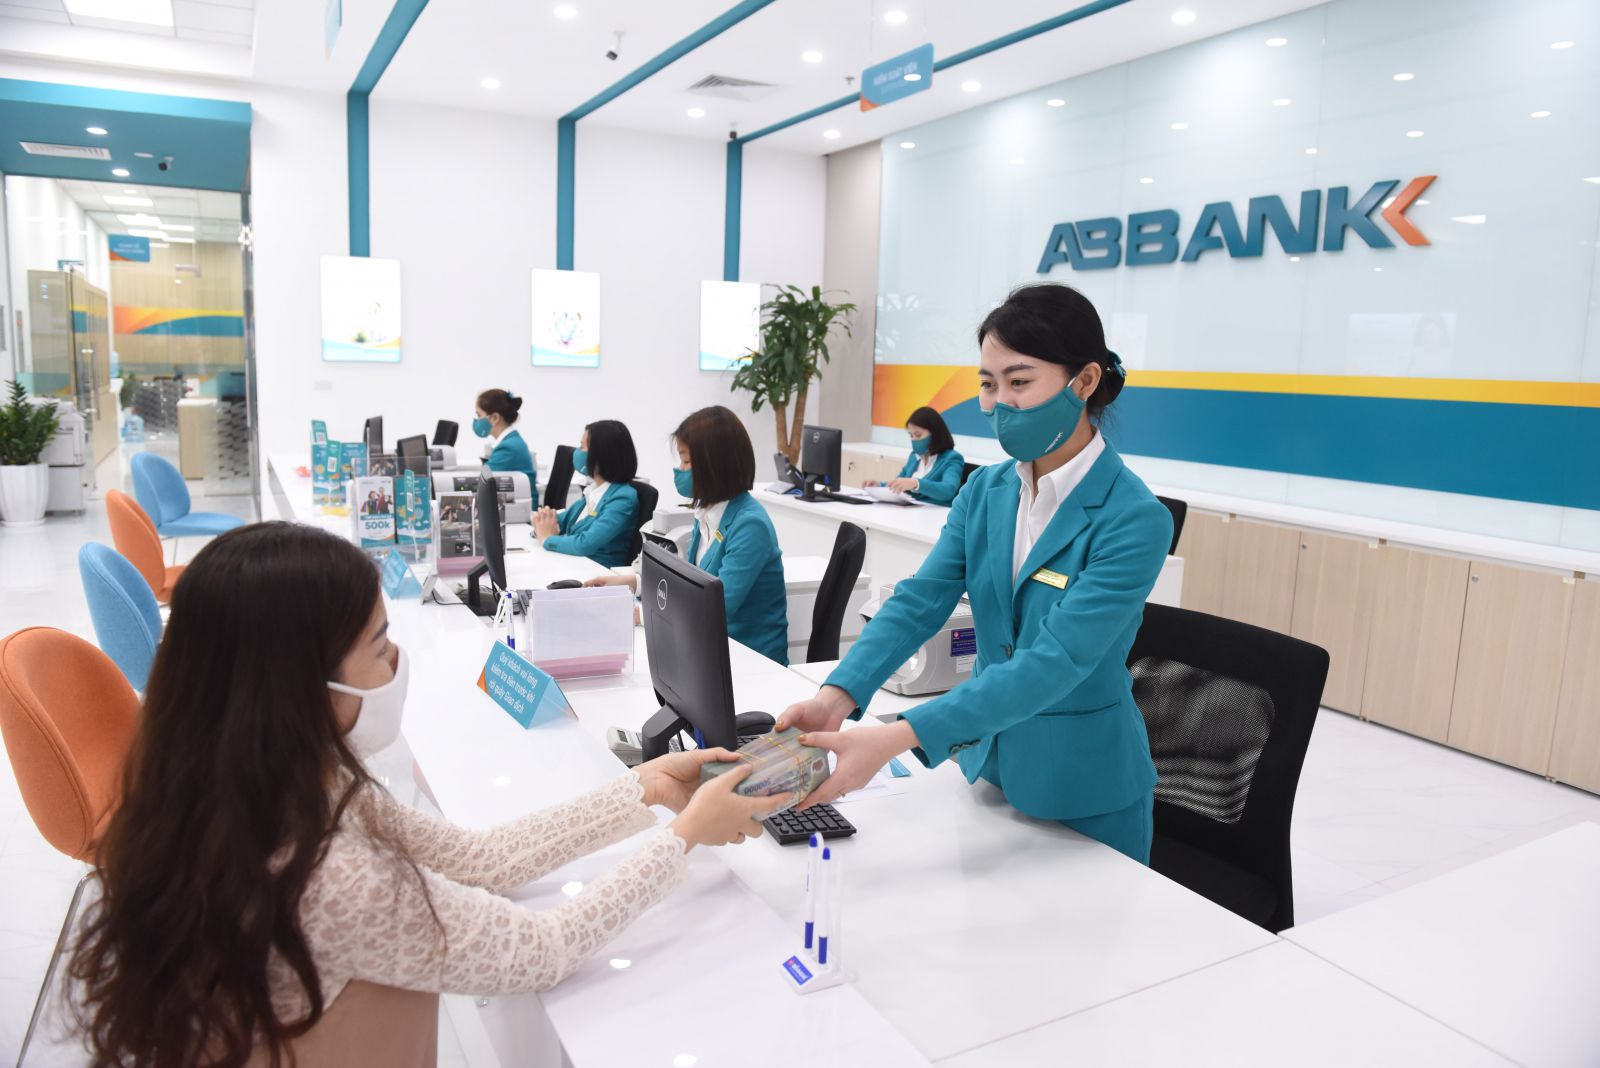 ABBANK lọt Top 10 về chỉ số tăng trưởng thương hiệu trong ngành ngân hàng